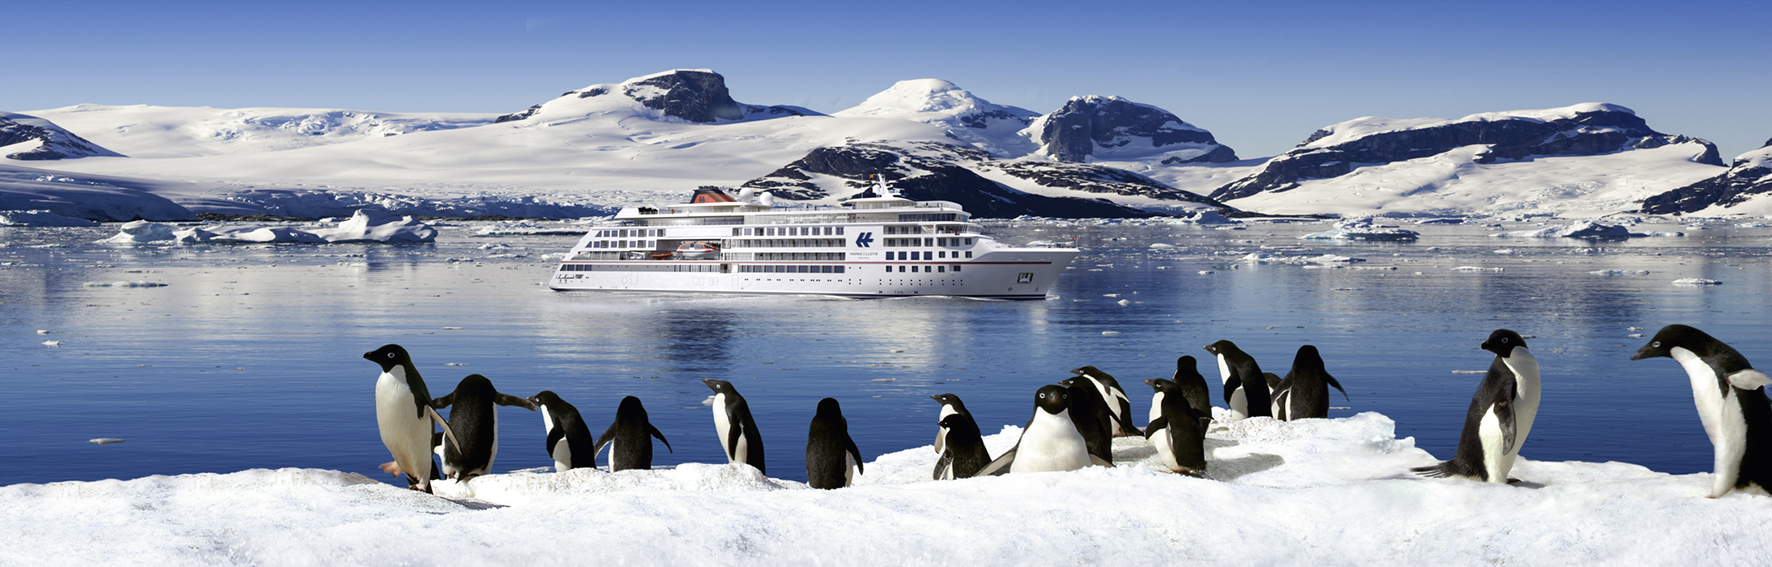 Die Antarktis ist eines der Ziele für die neuen Expeditionsschiffe   Foto: Hapag-Lloyd Cruises